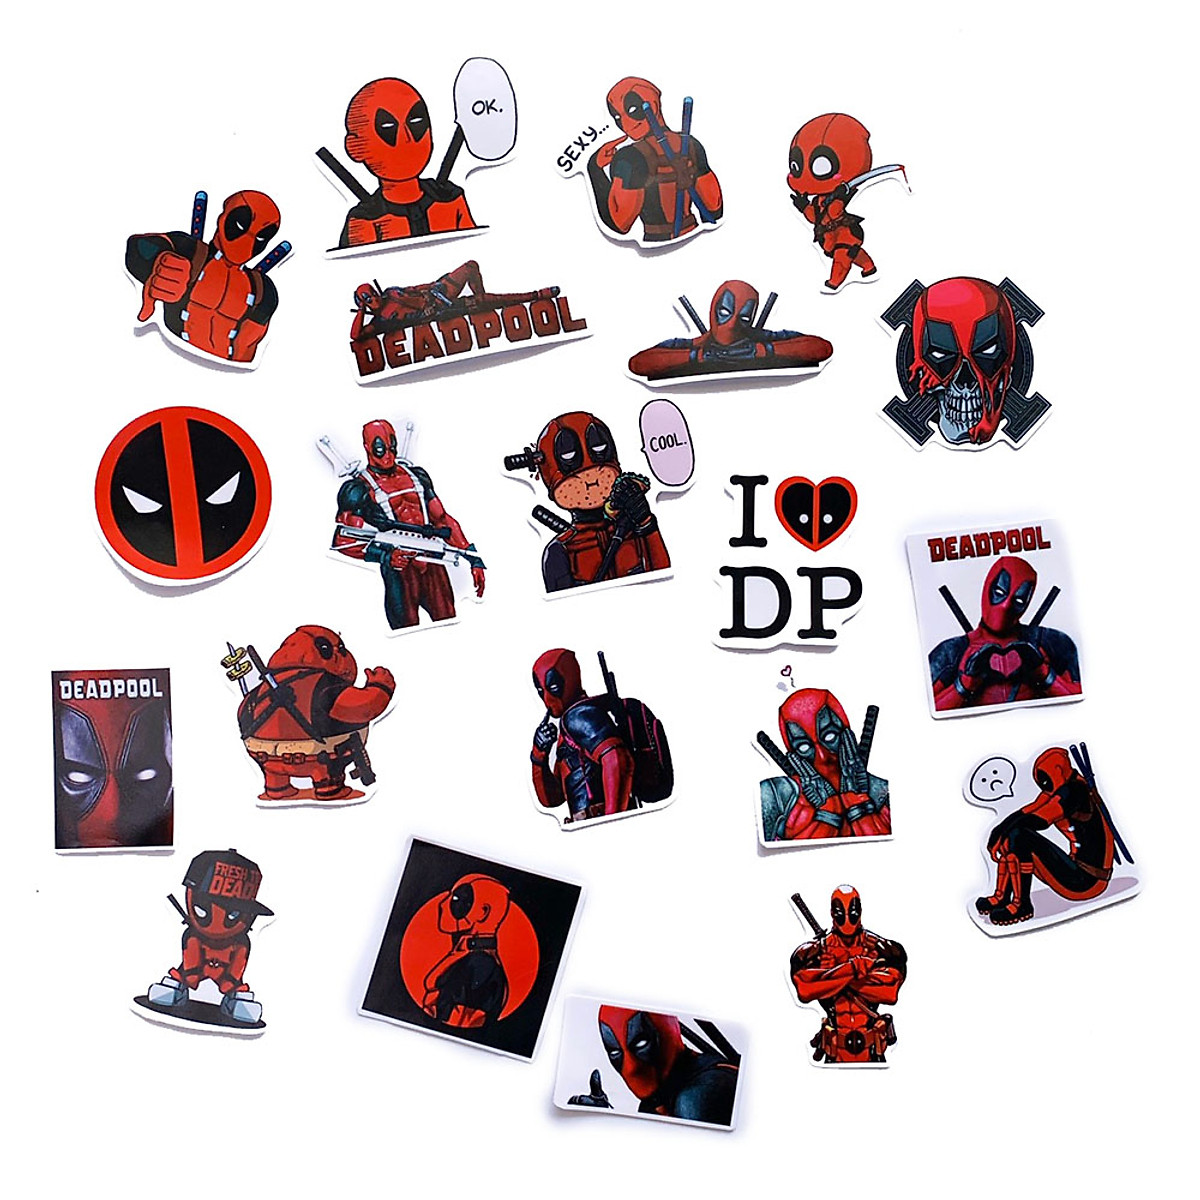 Sticker Deadpool đỏ đen sẽ khiến bạn cười đến té ghế với những câu nói hài hước và sắc bén. Hãy cùng khám phá những sticker độc đáo này và thêm chúng vào bộ sưu tập của mình để khiến cuộc trò chuyện trở nên thú vị hơn.